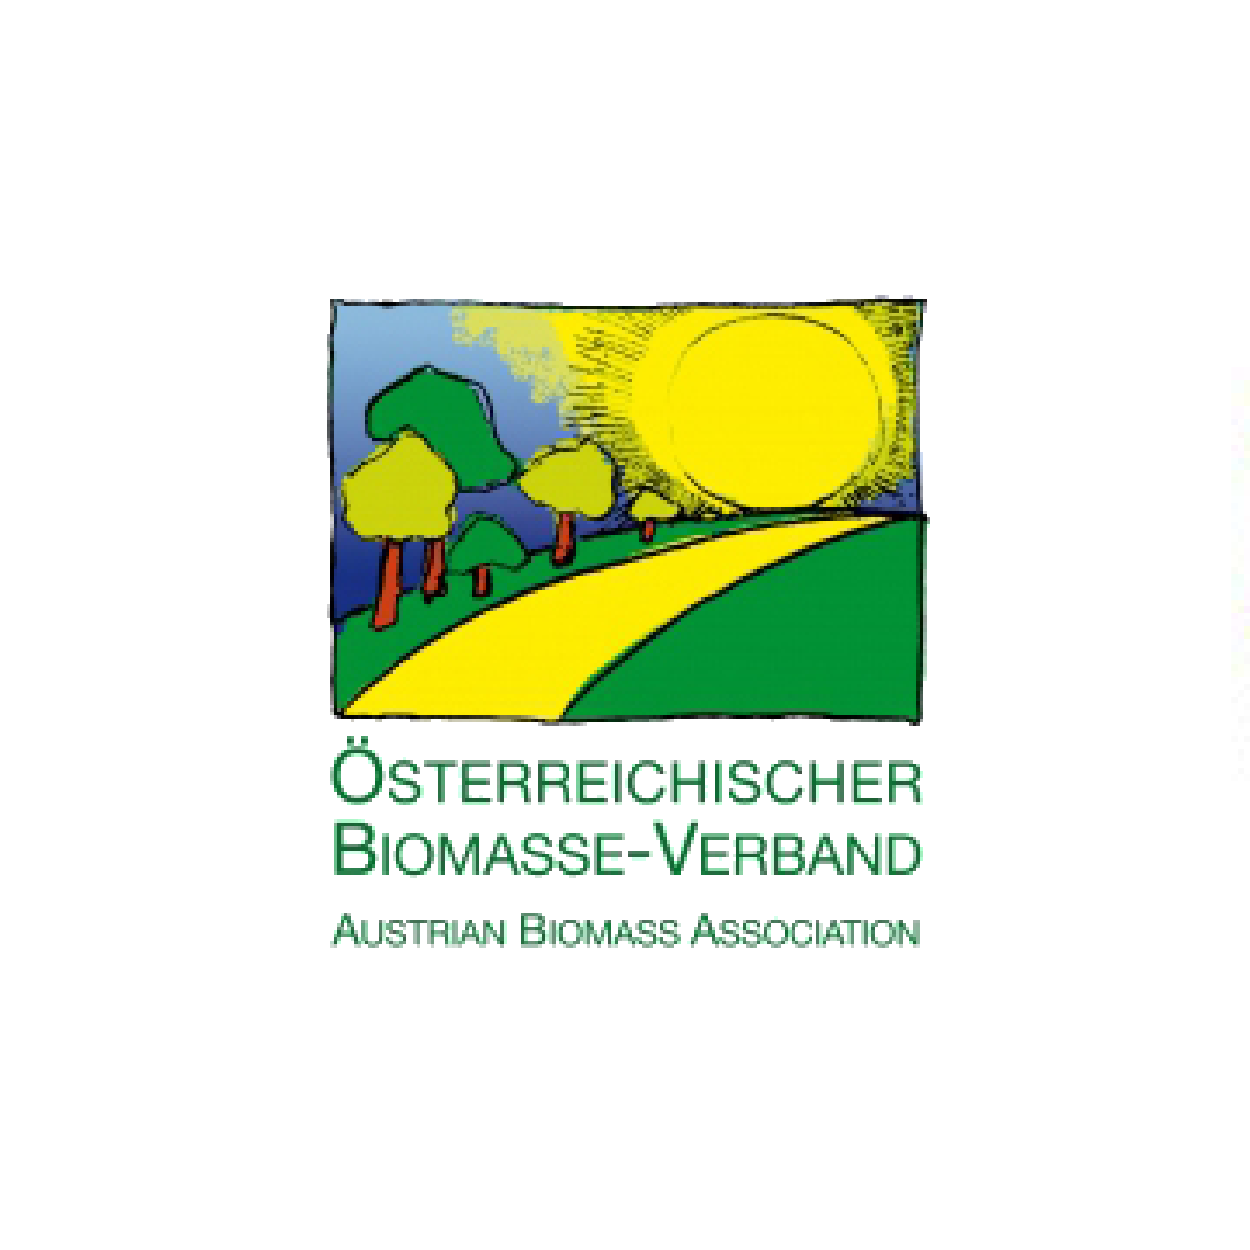 Austrian Biomass Association (ABA)